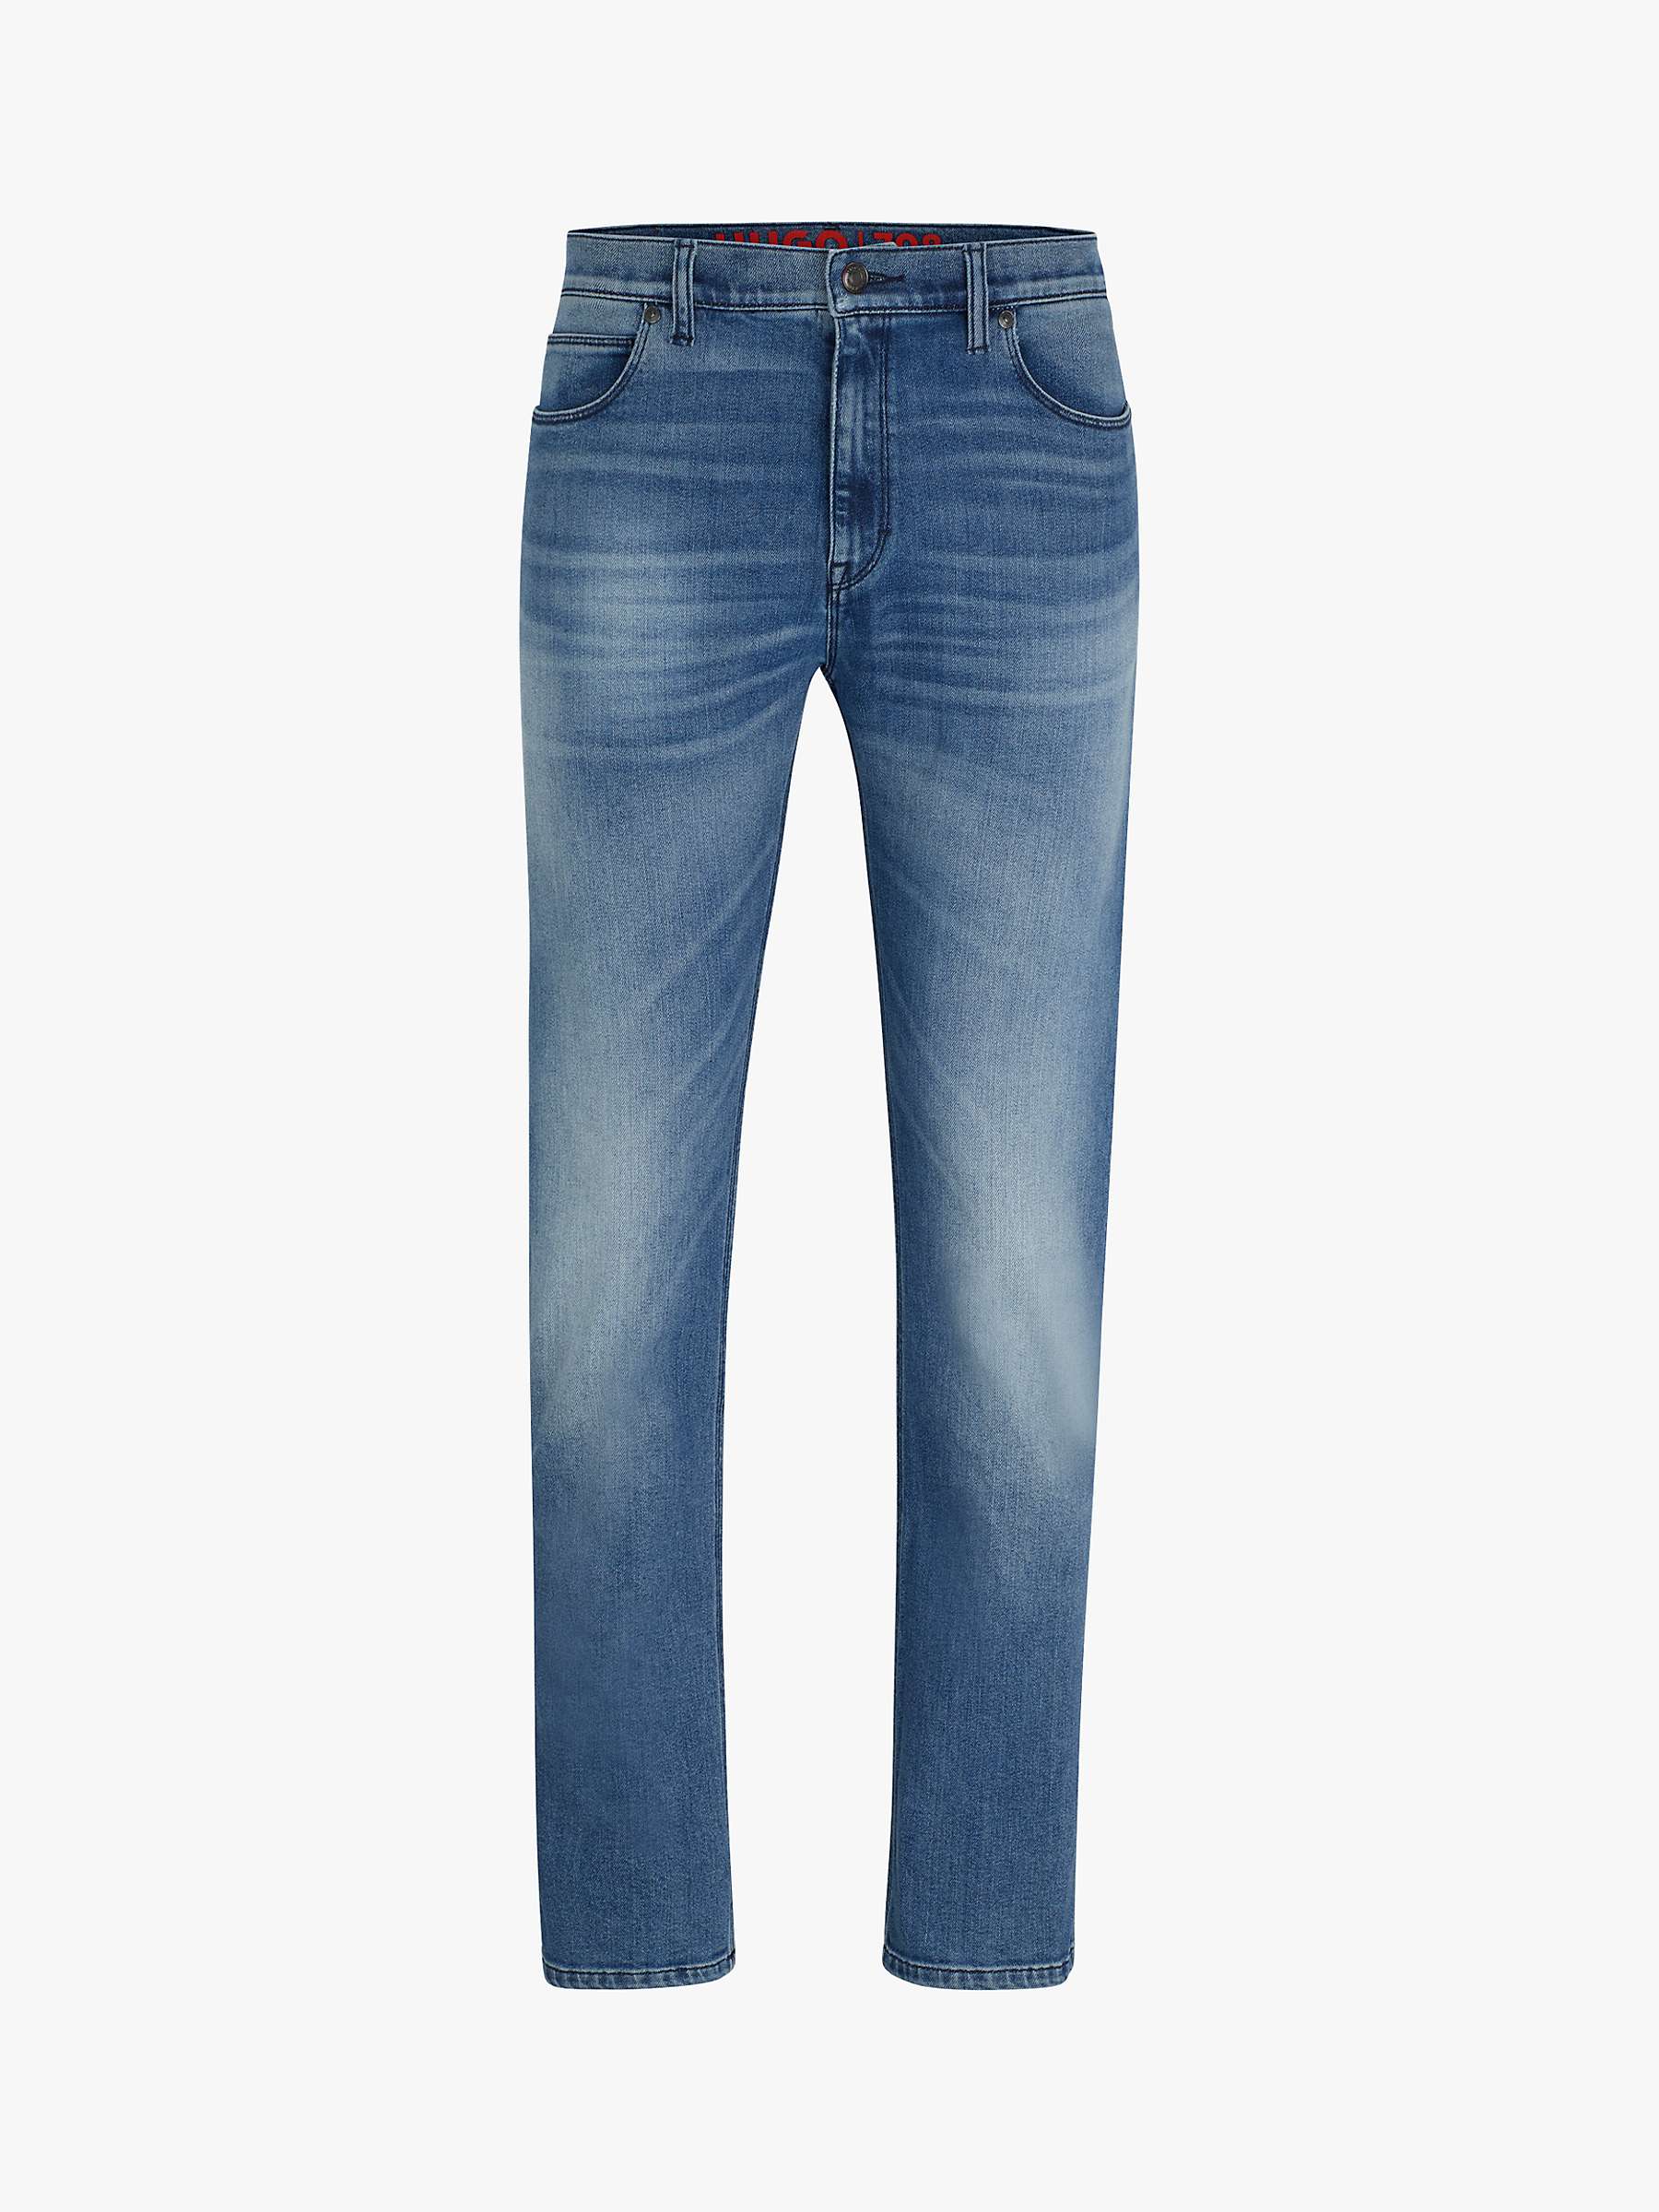 Buy HUGO 708 Slim Fit Jeans, Blue Online at johnlewis.com